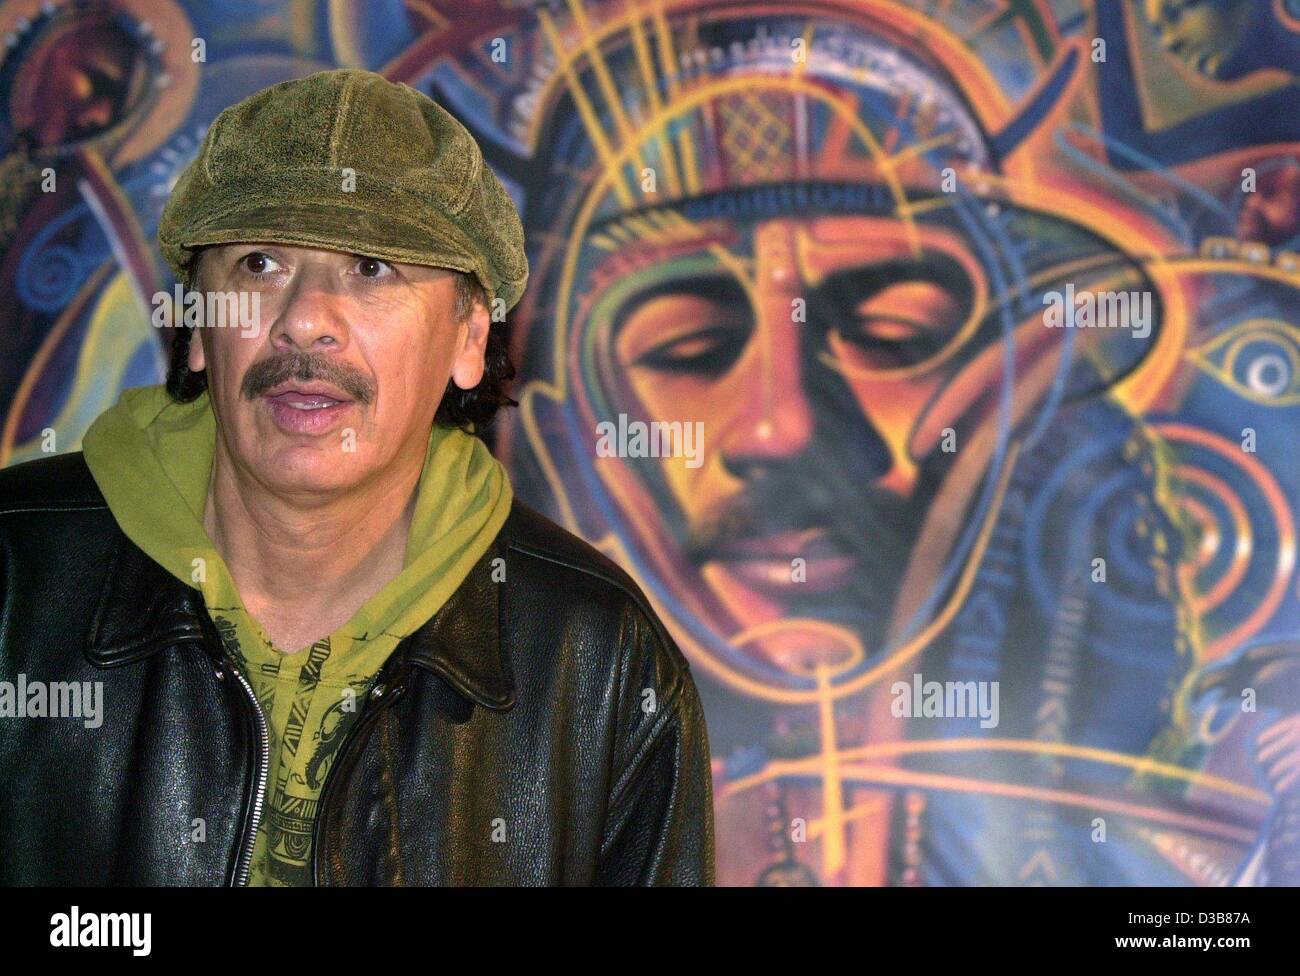 Der mexikanische Gitarrist und Sänger Carlos Santana ist abgebildet, während einer Pressekonferenz in München am 9. Dezember 2002. Carlos Santana sagt über den Erfolg seines neuen Albums "Schamanen", die im Oktober 2002 veröffentlicht wurde und bereits 4 Millionen Kopien weltweit verkauft. Stockfoto